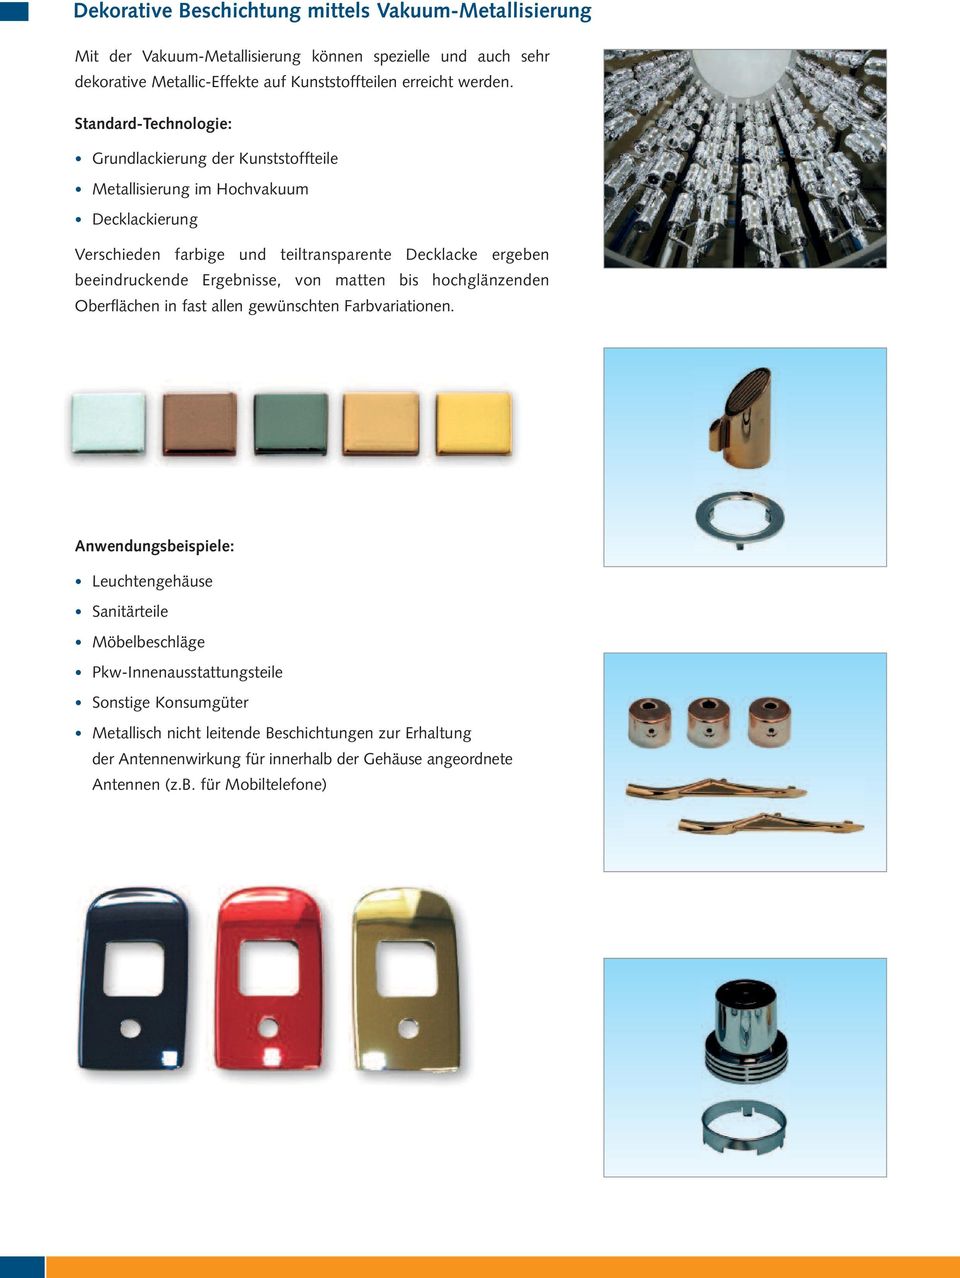 Standard-Technologie: Grundlackierung der Kunststoffteile Metallisierung im Hochvakuum Decklackierung Verschieden farbige und teiltransparente Decklacke ergeben